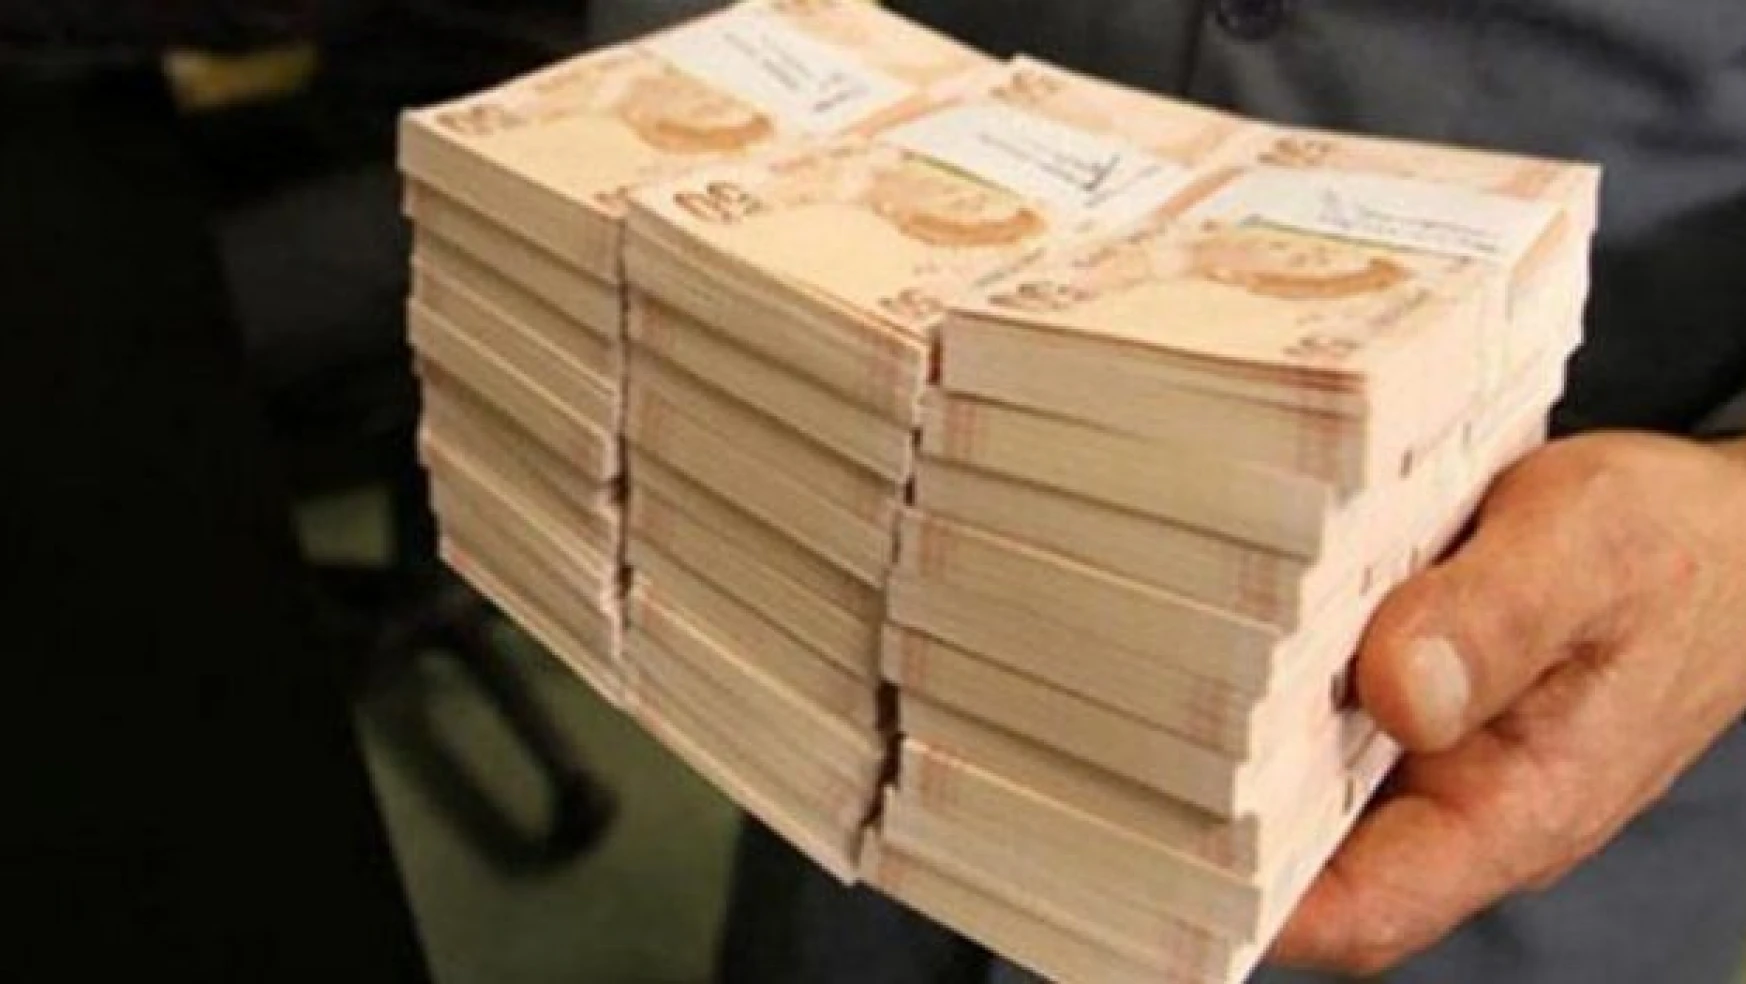 5 bin asker Forex'e para yatırdı 450 milyon kaptırdı